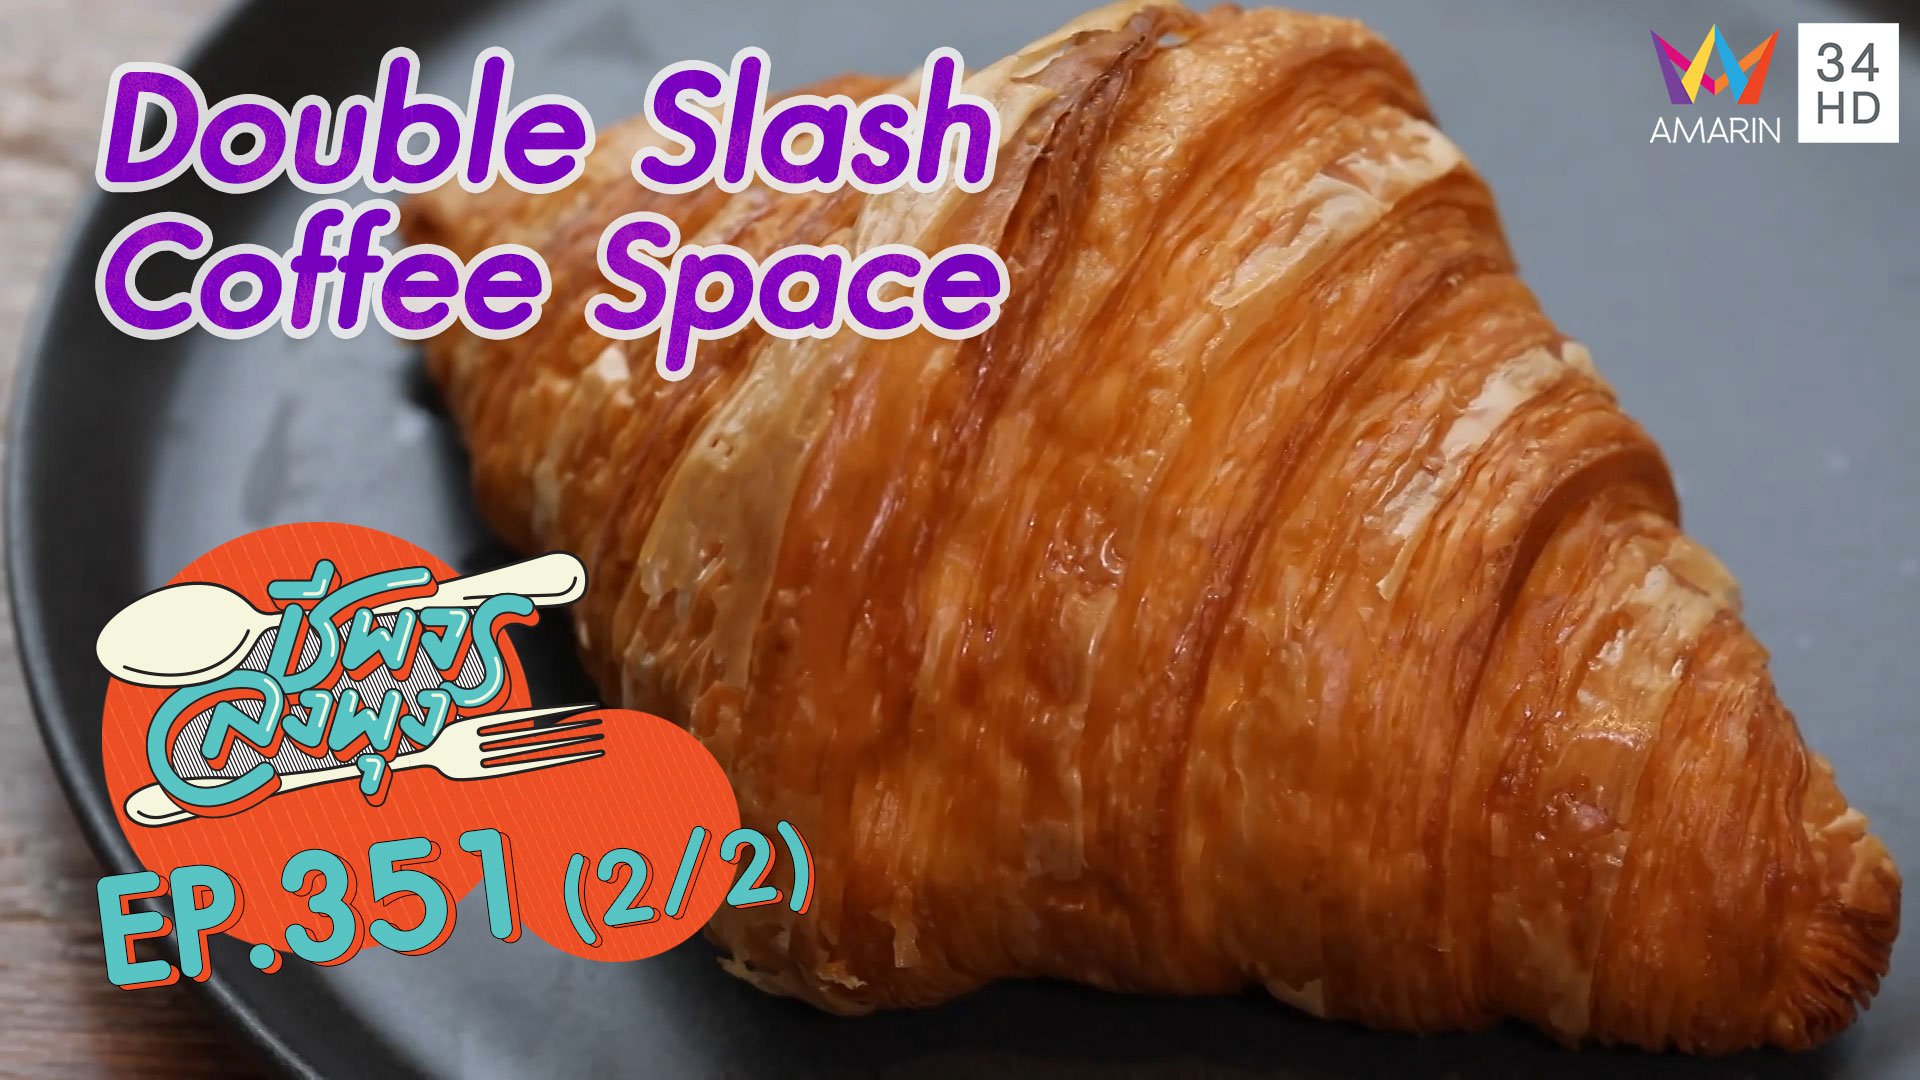 ครัวซองต์ฝรั่งเศสหอมกรอบอร่อย @ ร้าน Double Slash Coffee Space | ชีพจรลงพุง | 18 ธ.ค. 64 (2/2) | AMARIN TVHD34